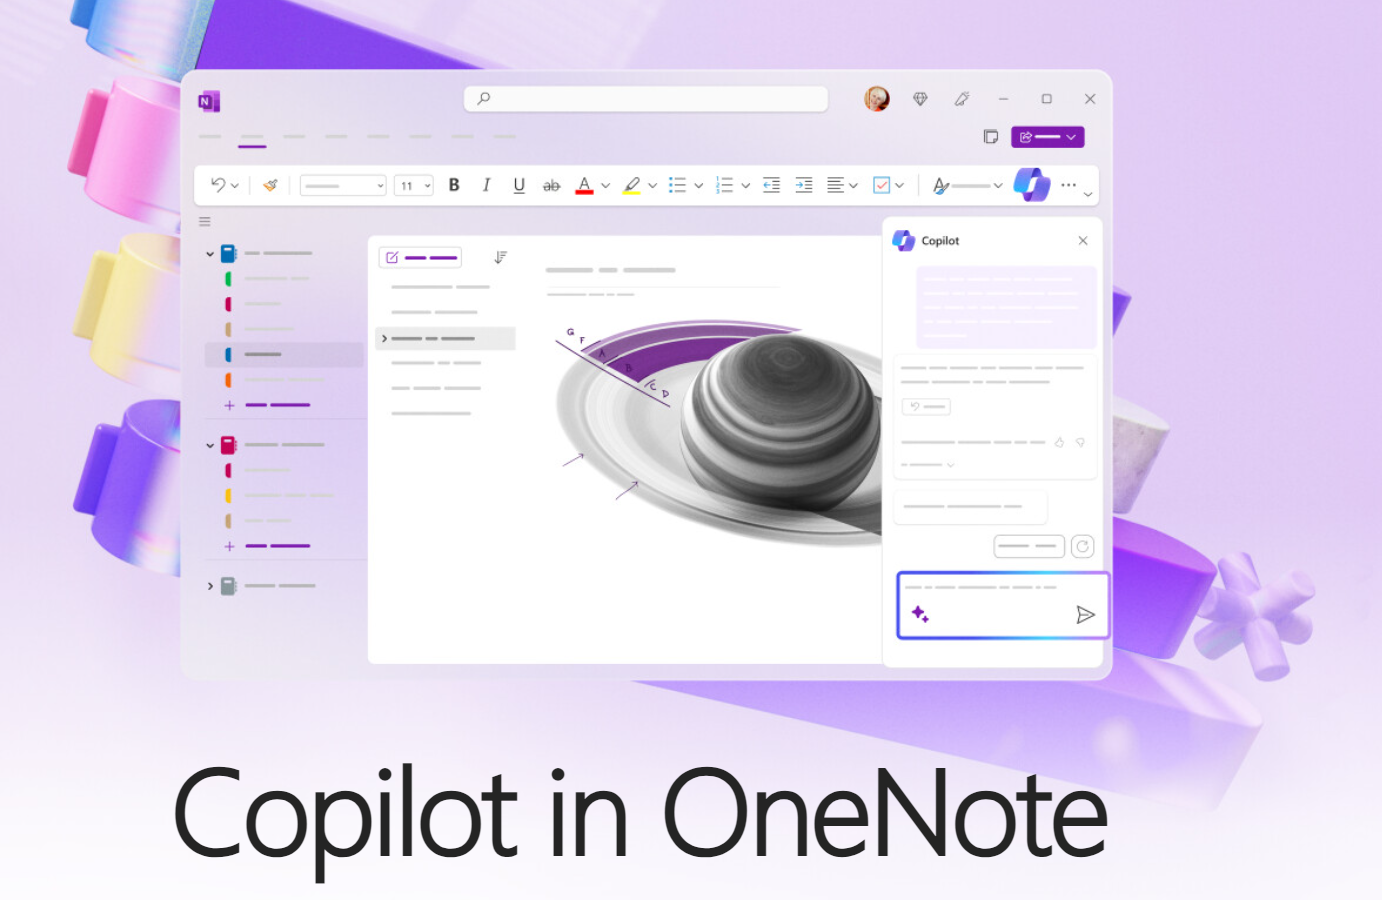 Microsoft doda asystenta Copilot AI do aplikacji OneNote w listopadzie